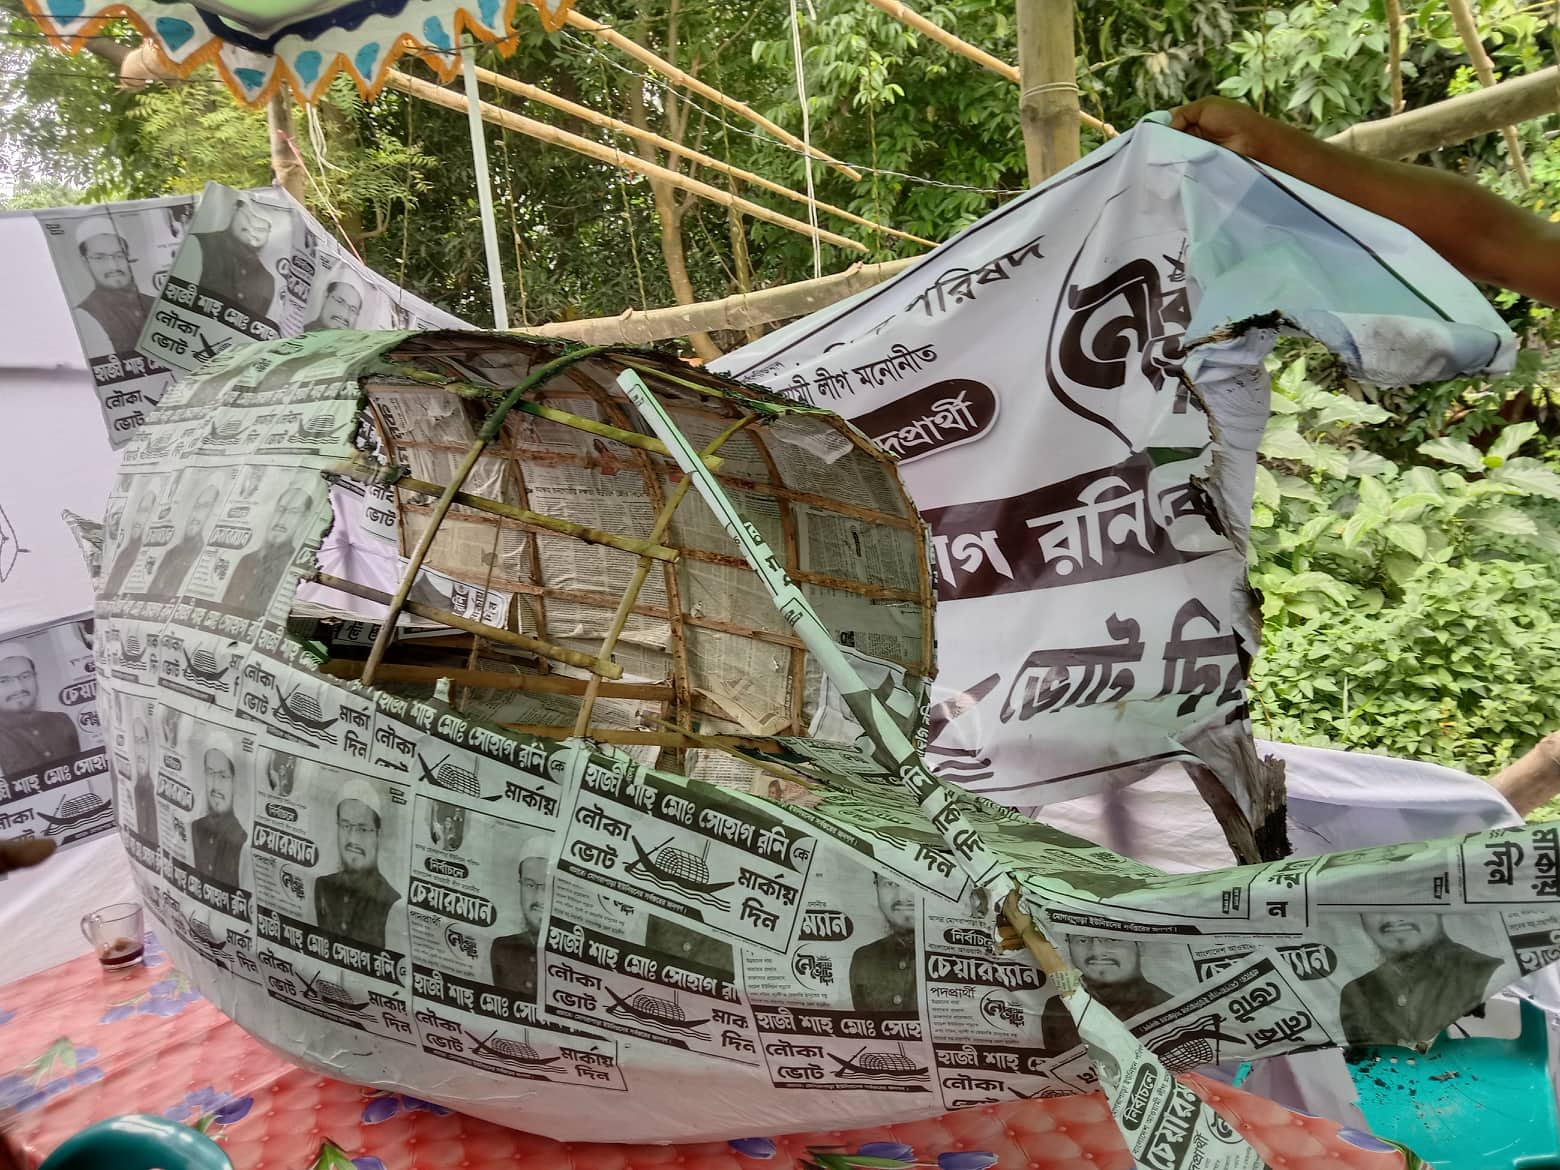 নারায়ণগঞ্জের সোনারগাঁওয়ে মোগরাপাড়া ইউপি নির্বাচনে আওয়ামীলীগ মনোনীত প্রার্থী হাজী শাহ মো: সোহাগ রনির নৌকার ক্যাম্পে আগুন